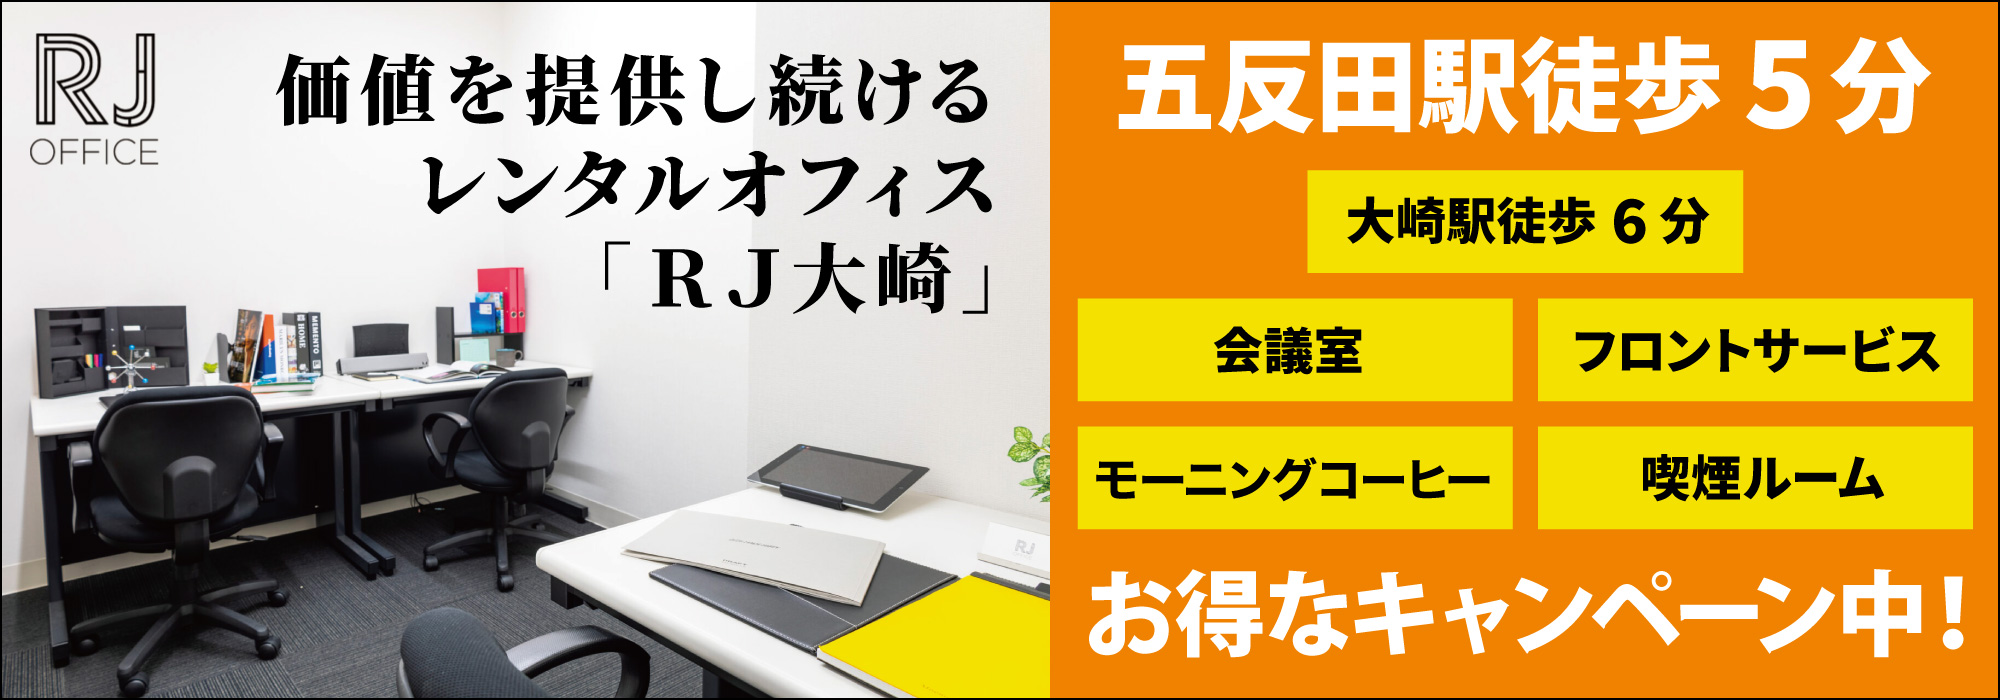 五反田のレンタルオフィス「RJ大崎」五反田駅徒歩５分、価値を提供し続けるレンタルオフィス